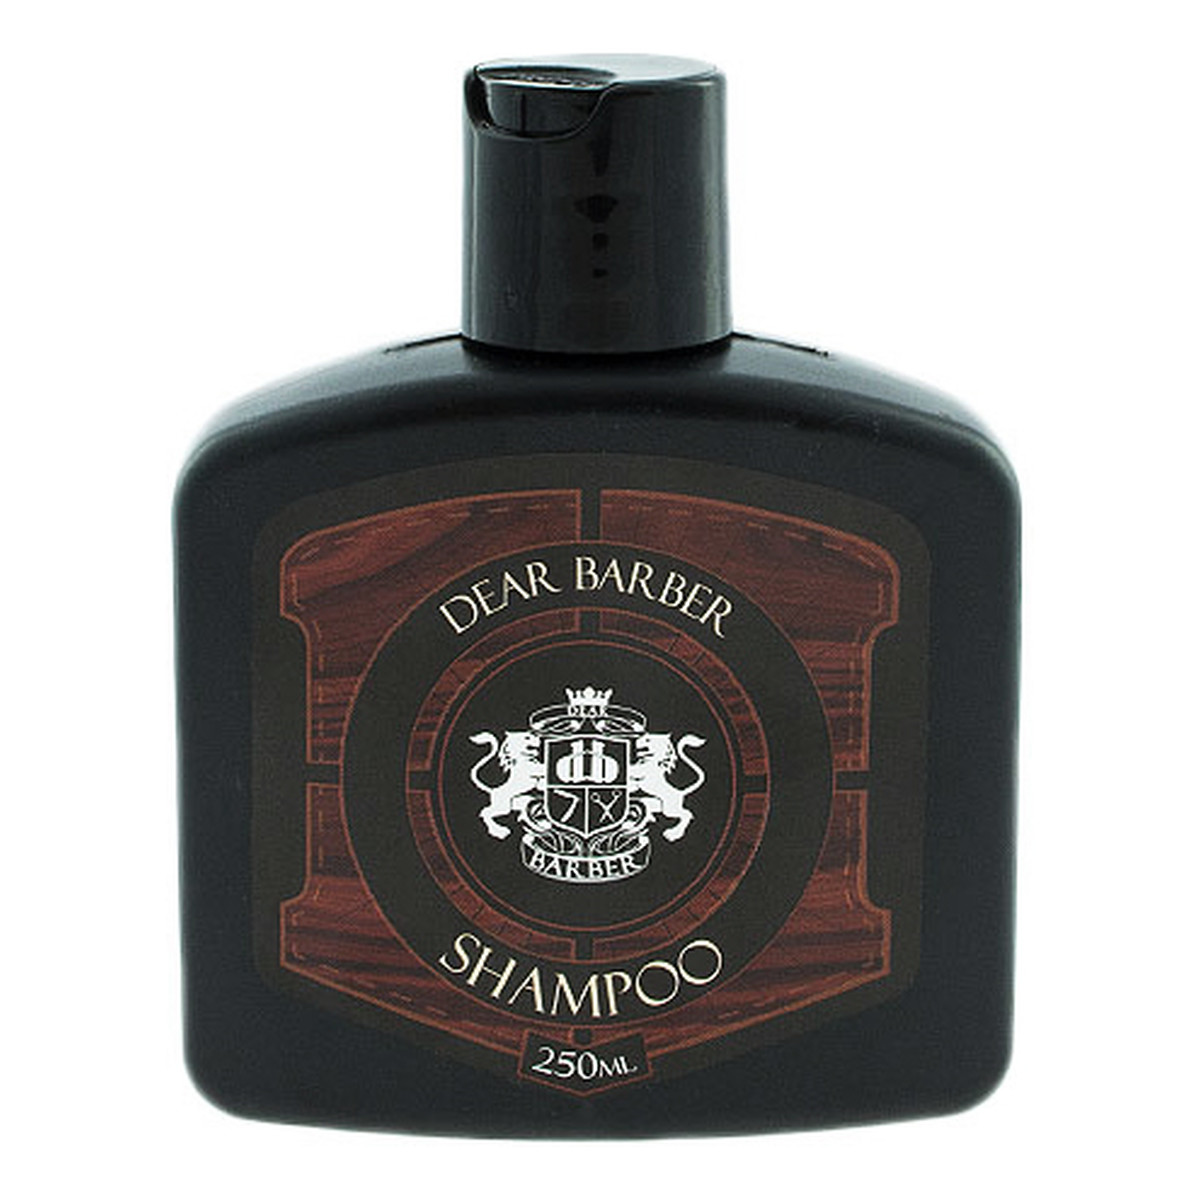 Dear Barber szampon do pielęgnacji włosów i brody 250ml